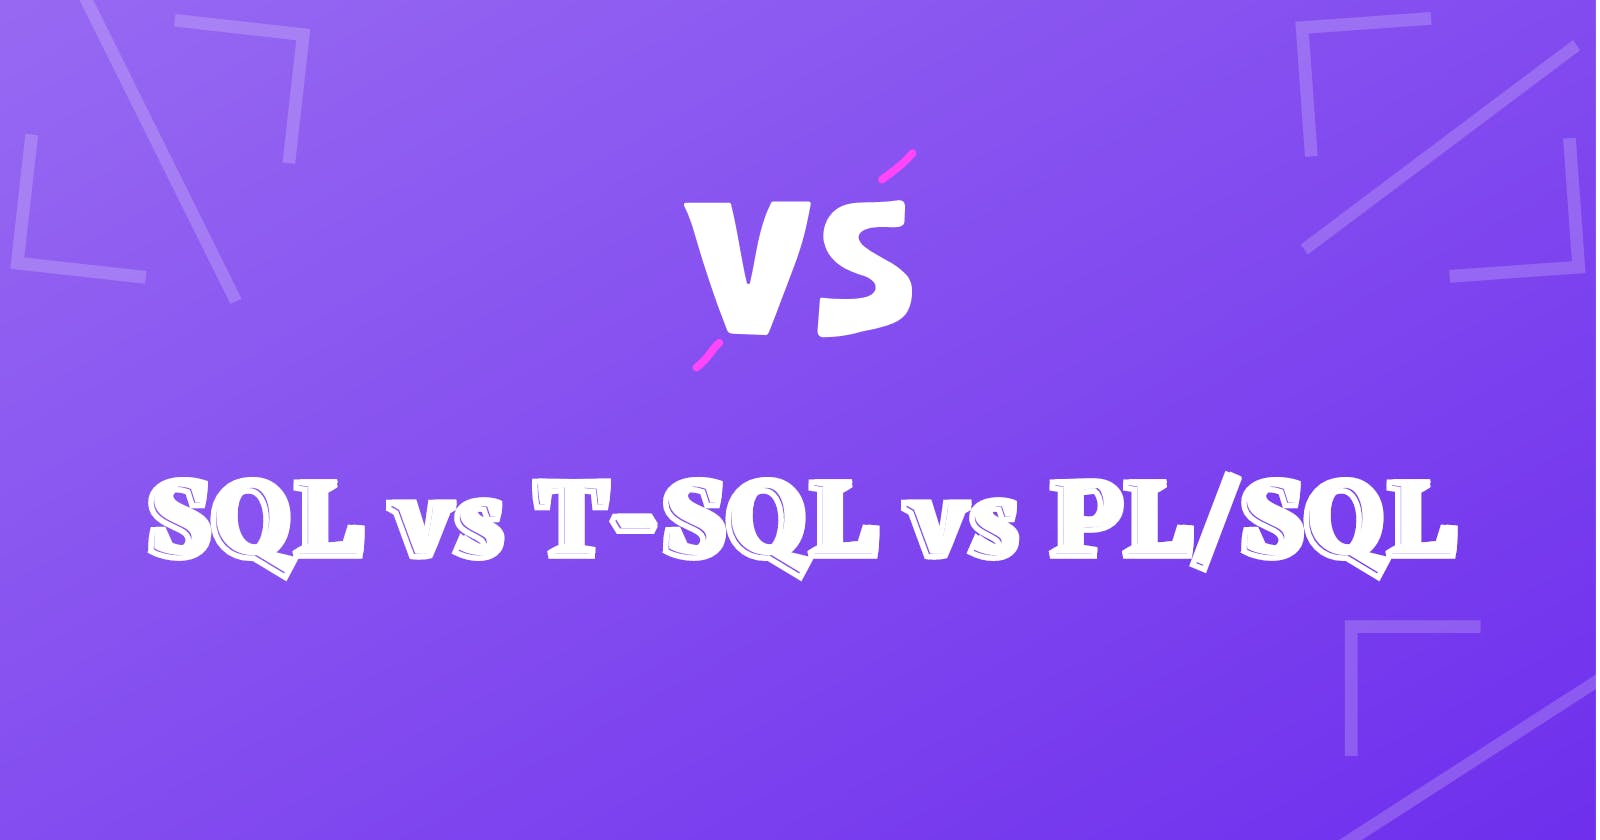 SQL vs T-SQL vs PL/SQL